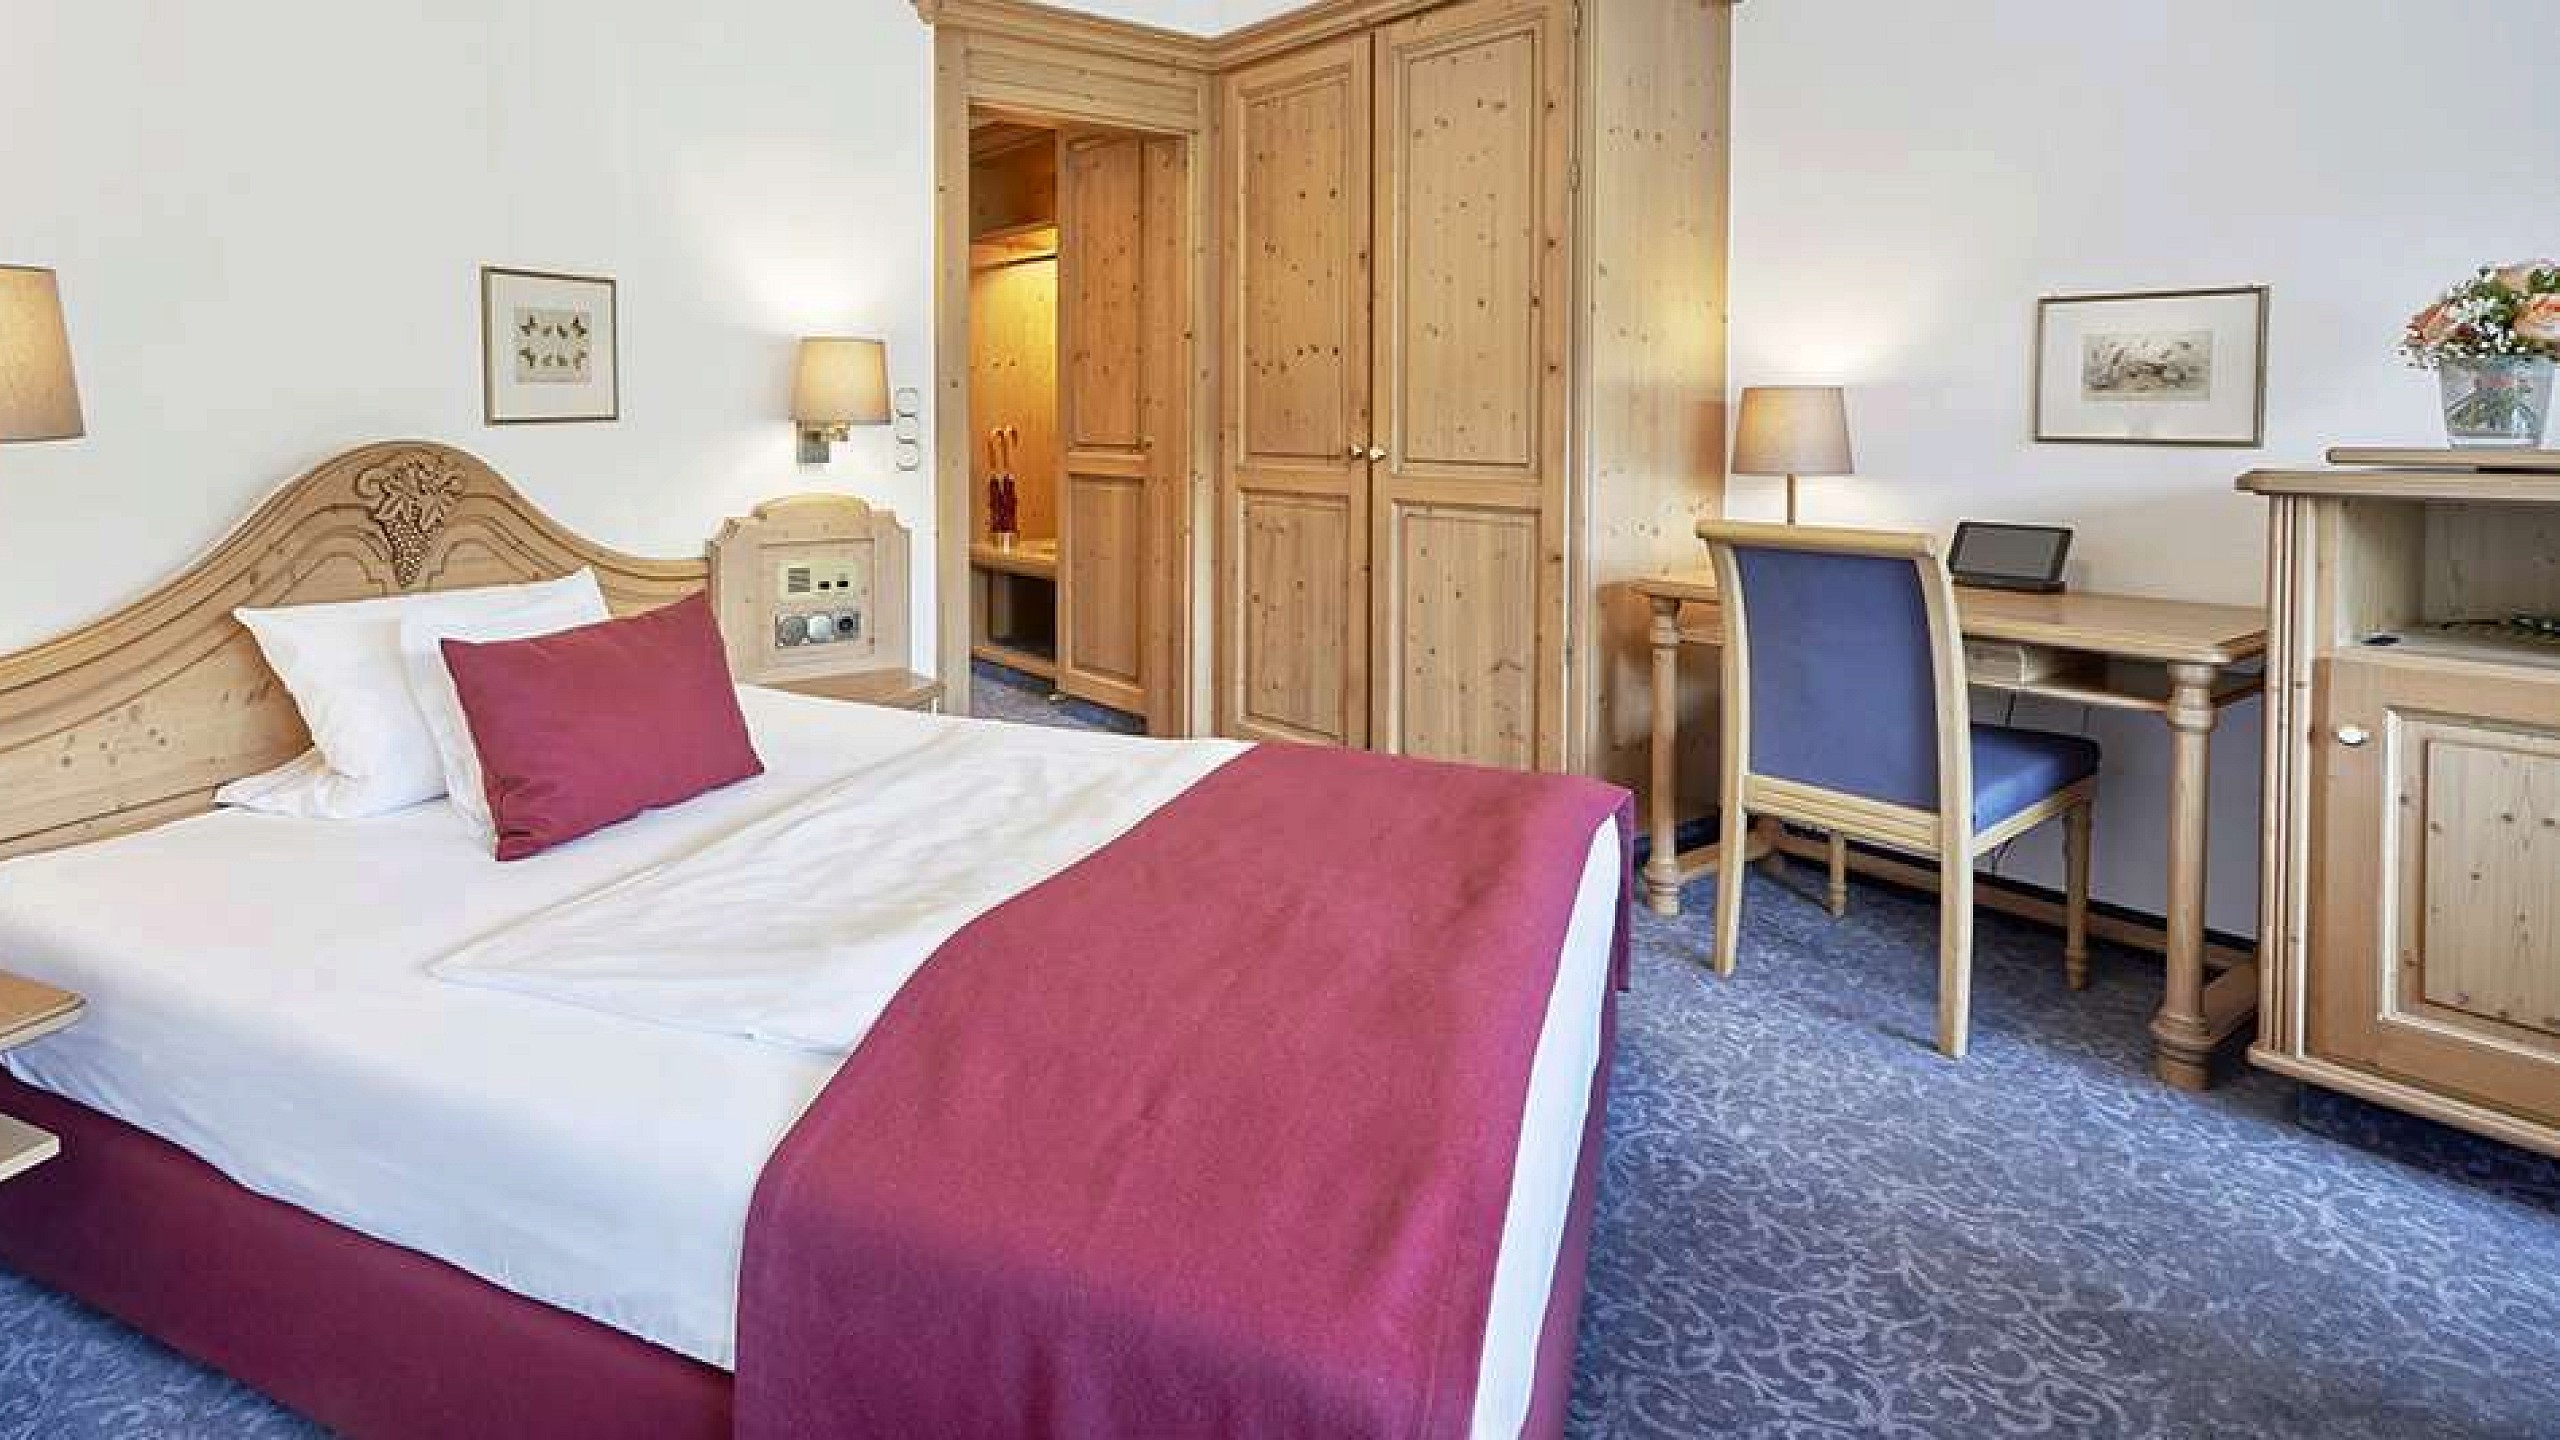 Hotelzimmer im Schwarzwald mit gemütlichem Bett, Kleiderschrank und Schreibtisch.